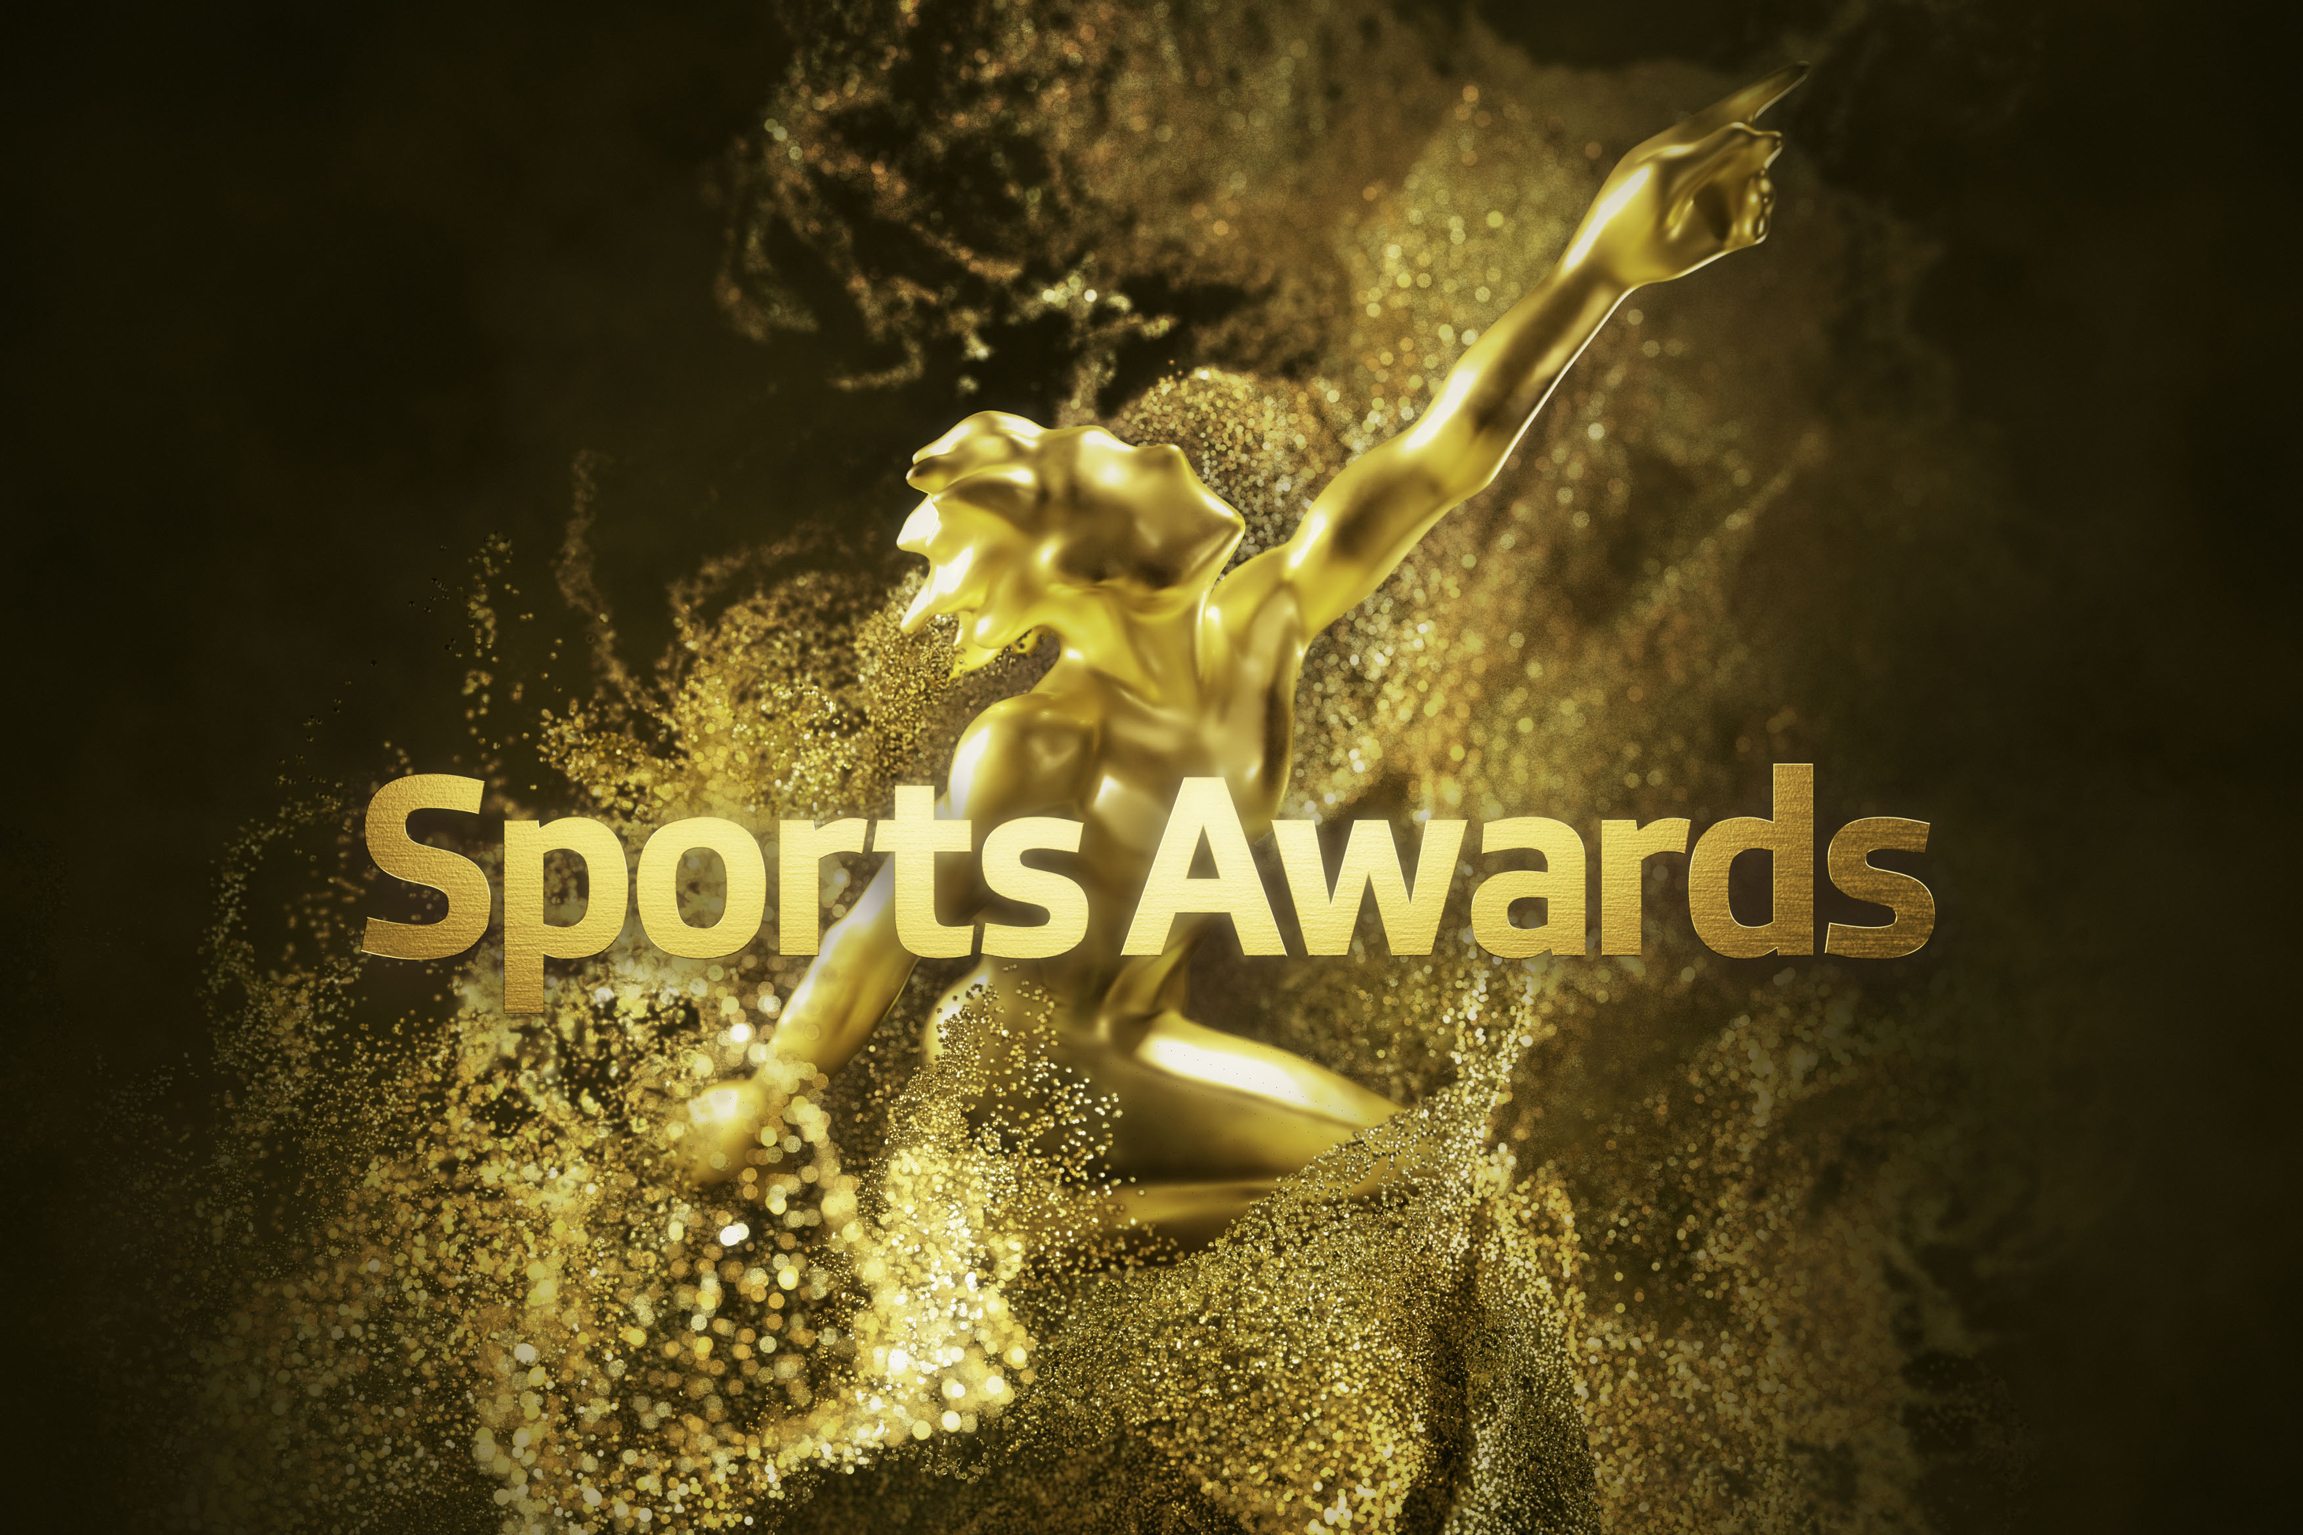 Sports Awards Keyvisual 2019